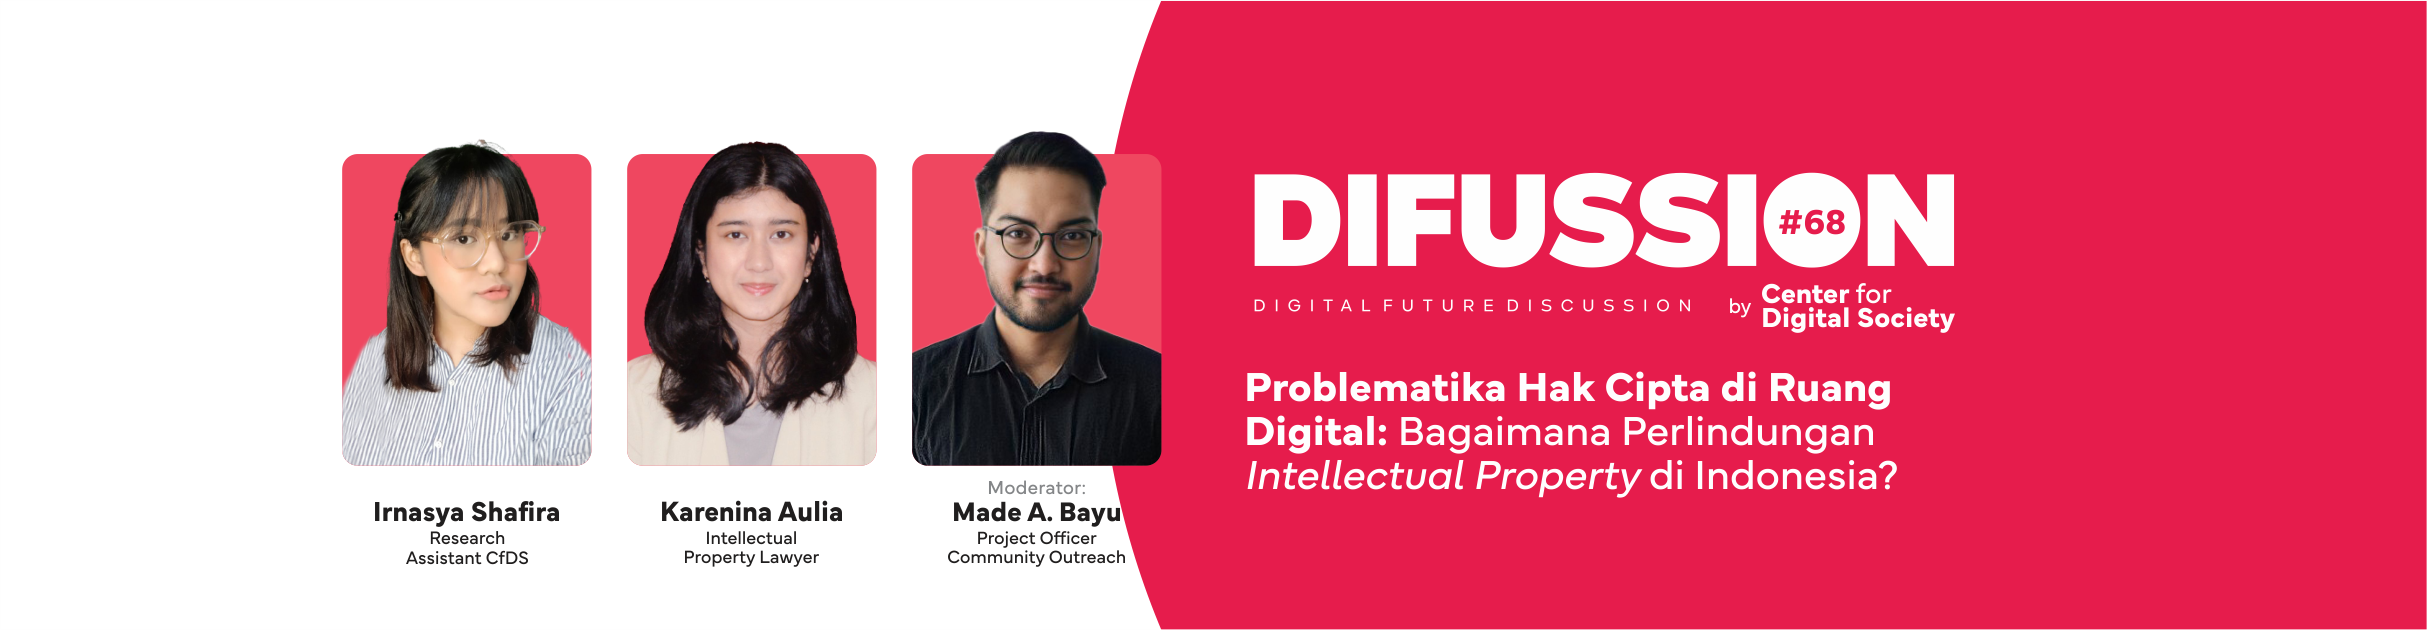 [SIARAN PERS] Problematika Hak Cipta di Ruang Digital: Bagaimana Perlindungan Intellectual Property di Indonesia? | #DIFUSSION70